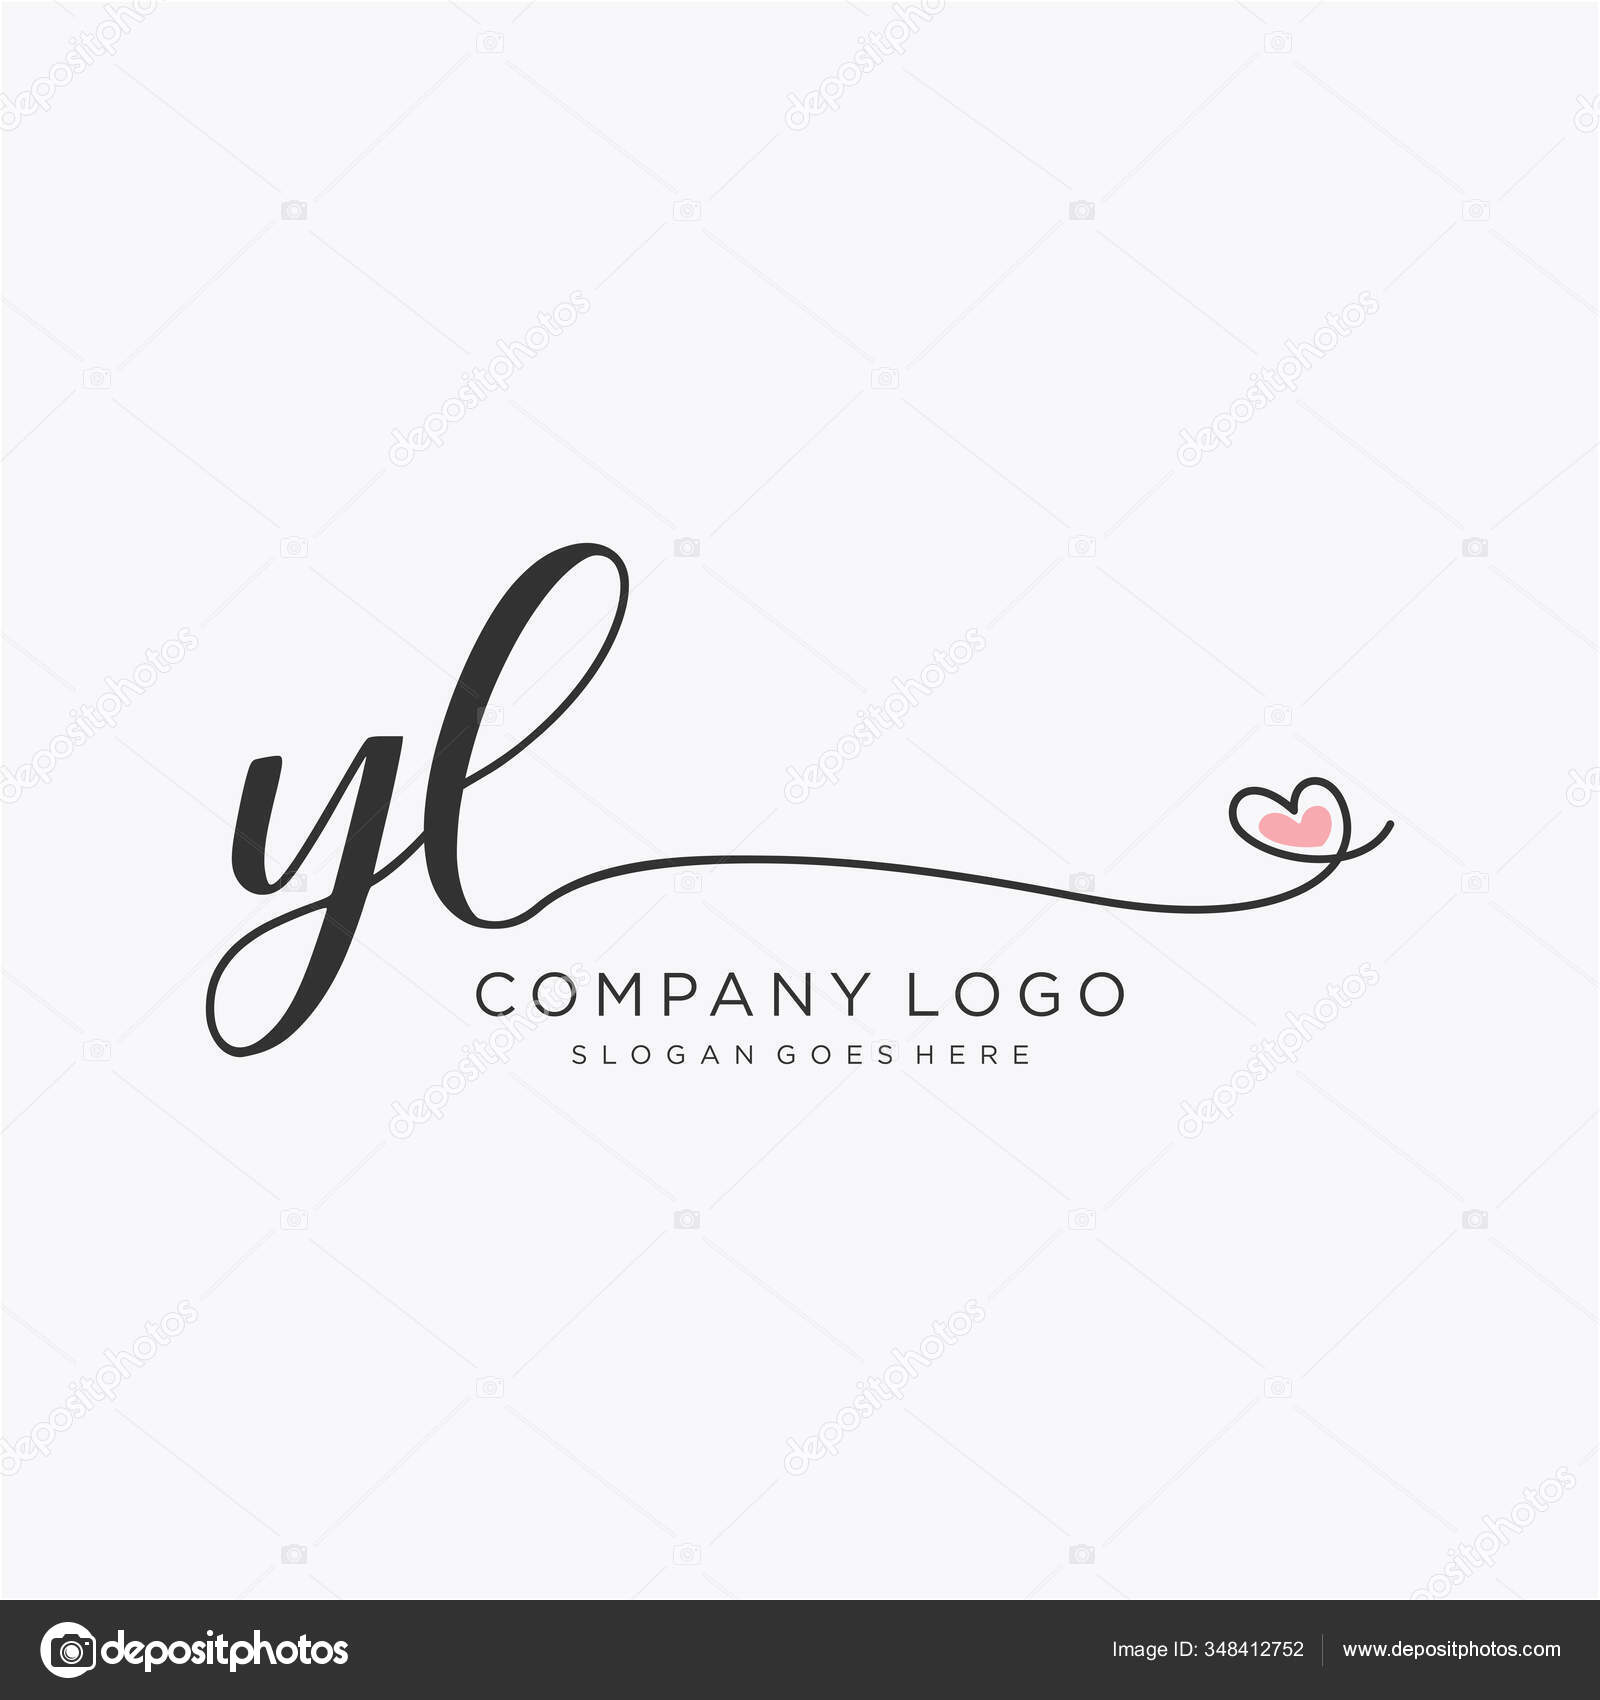 yl logo image